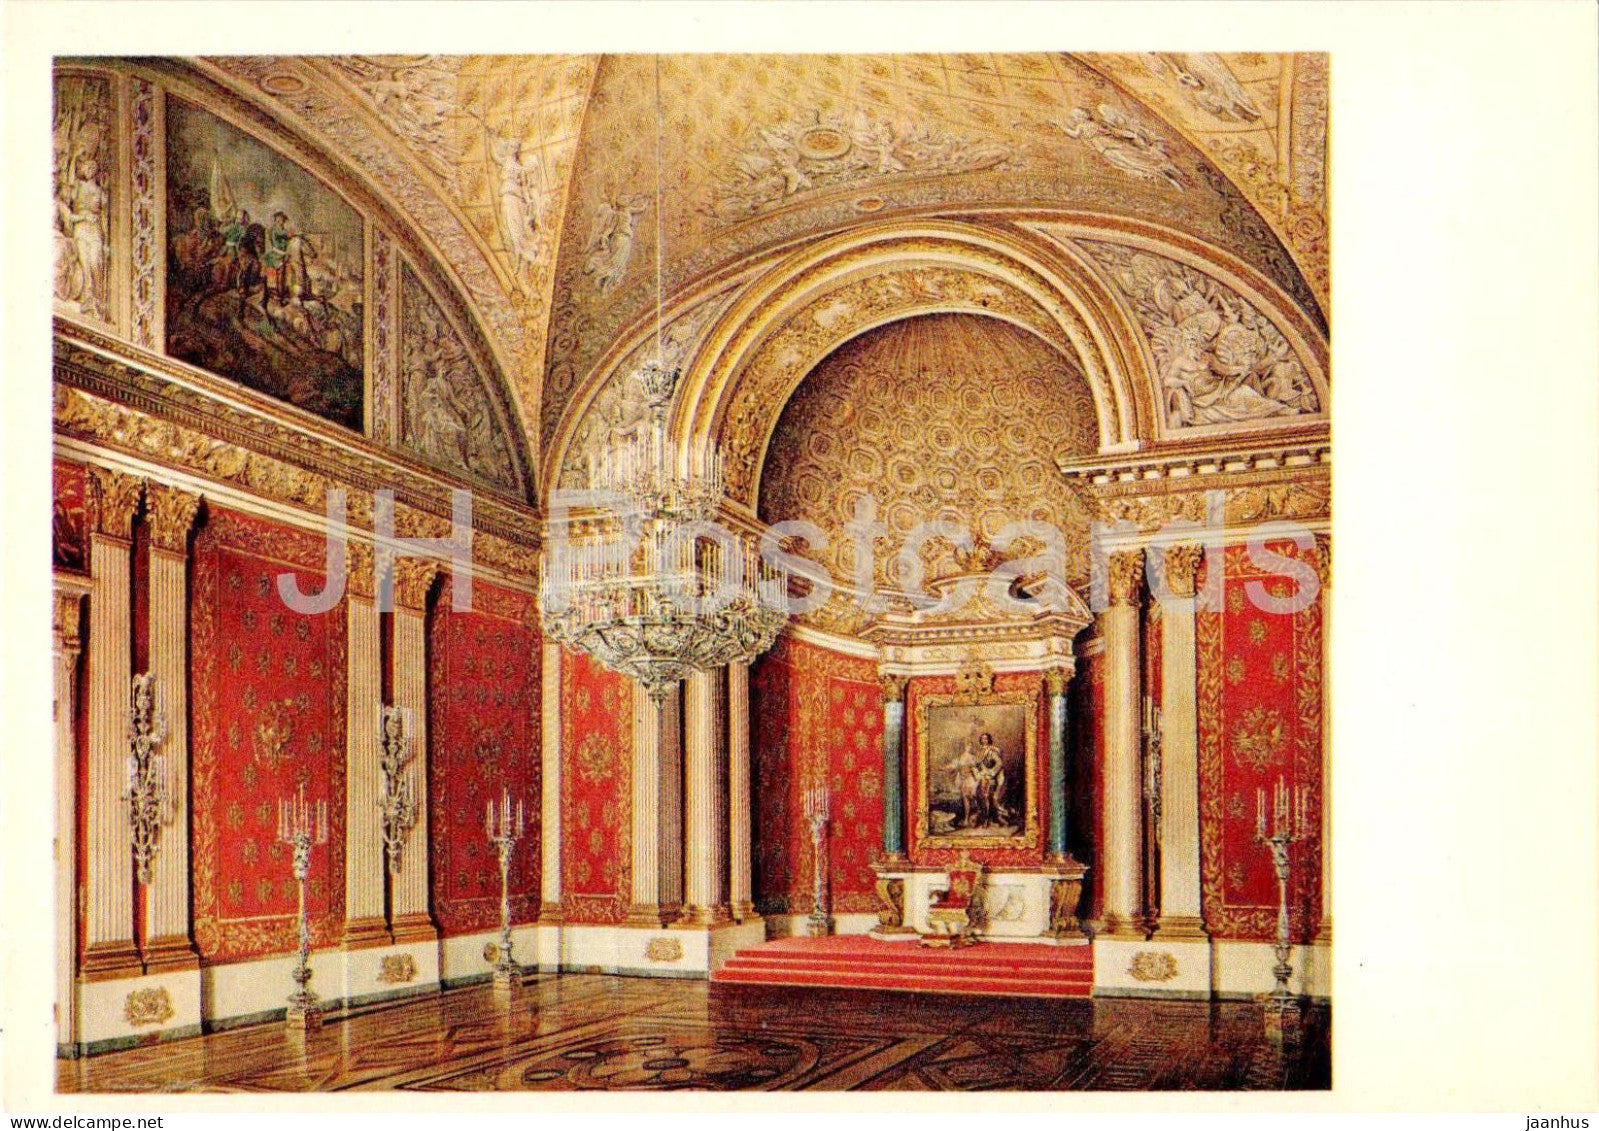 Leningrad - St Petersburg - Winter Palace - Peter I Hall - painting by Hau - 1975 - Russia USSR - unused - JH Postcards